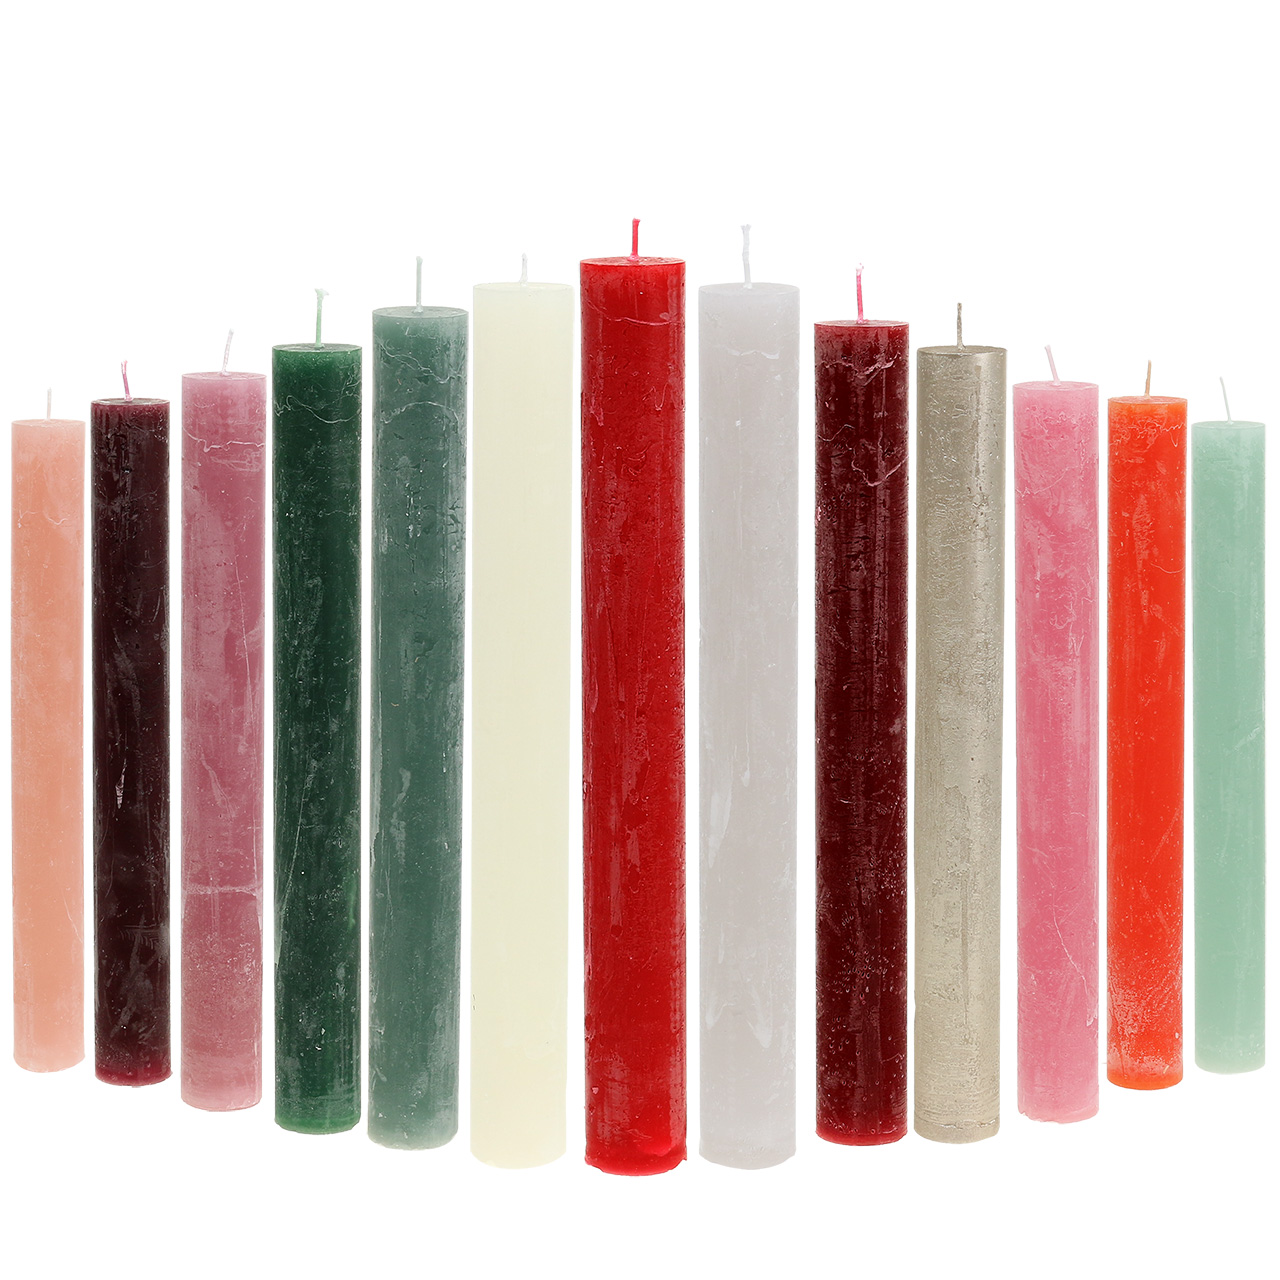 Candele coniche colorate in diversi colori 34 mm x 240 mm 4 pezzi